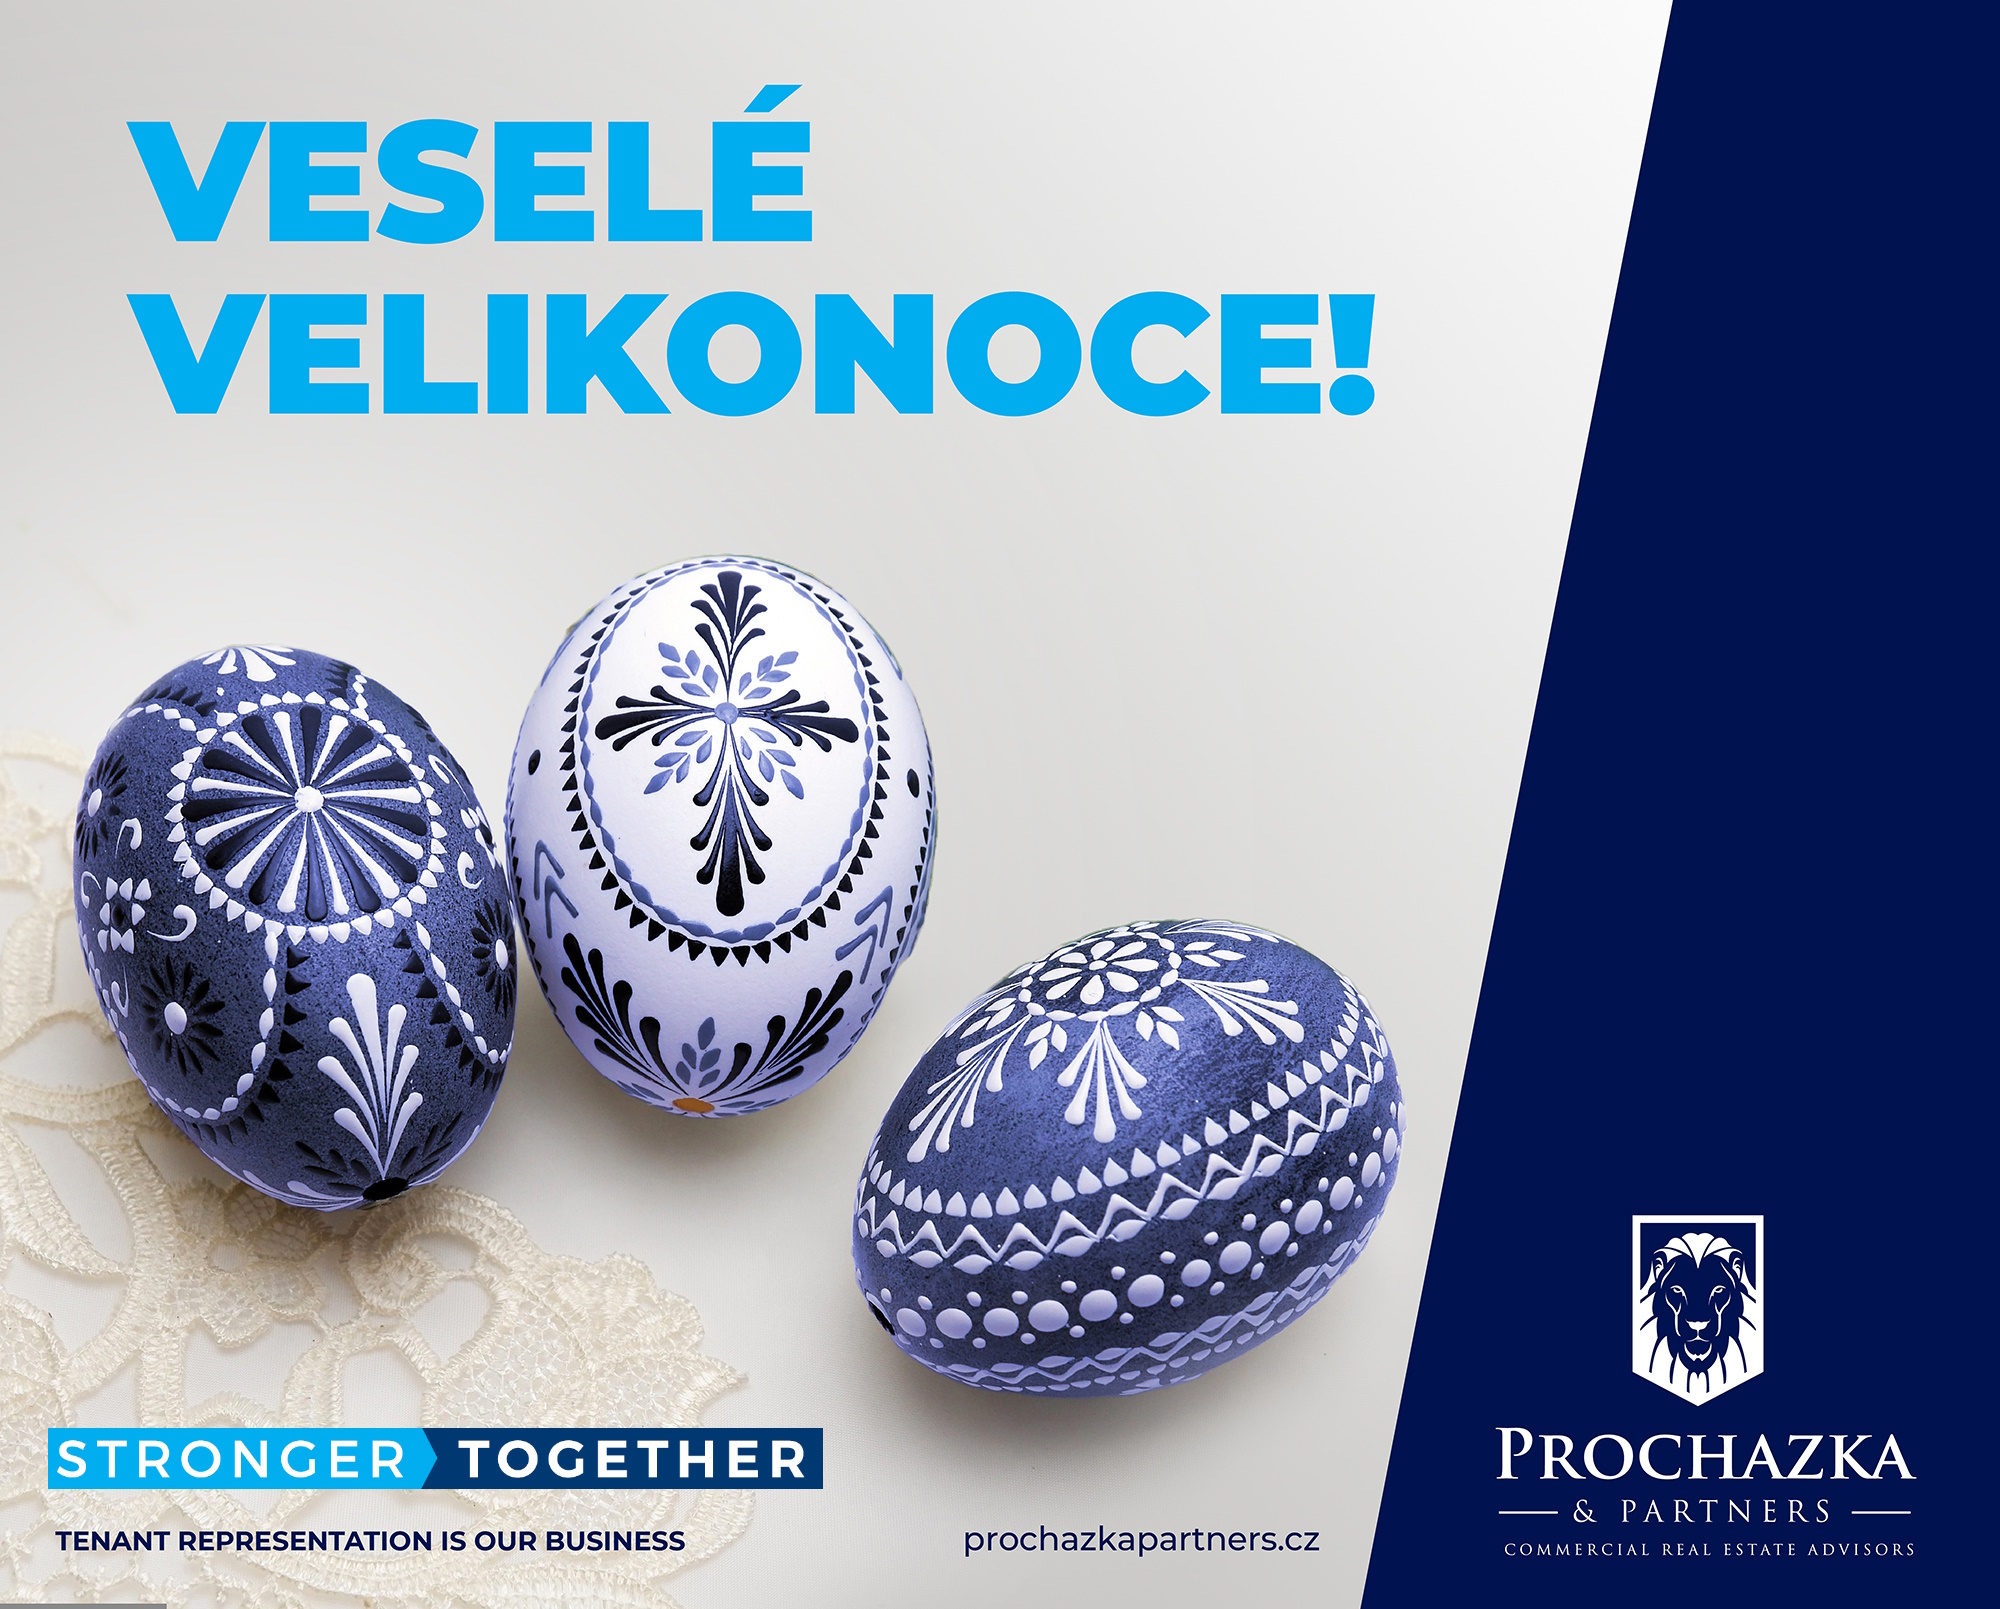 Veselé Velikonoce přeje Prochazka & Partners